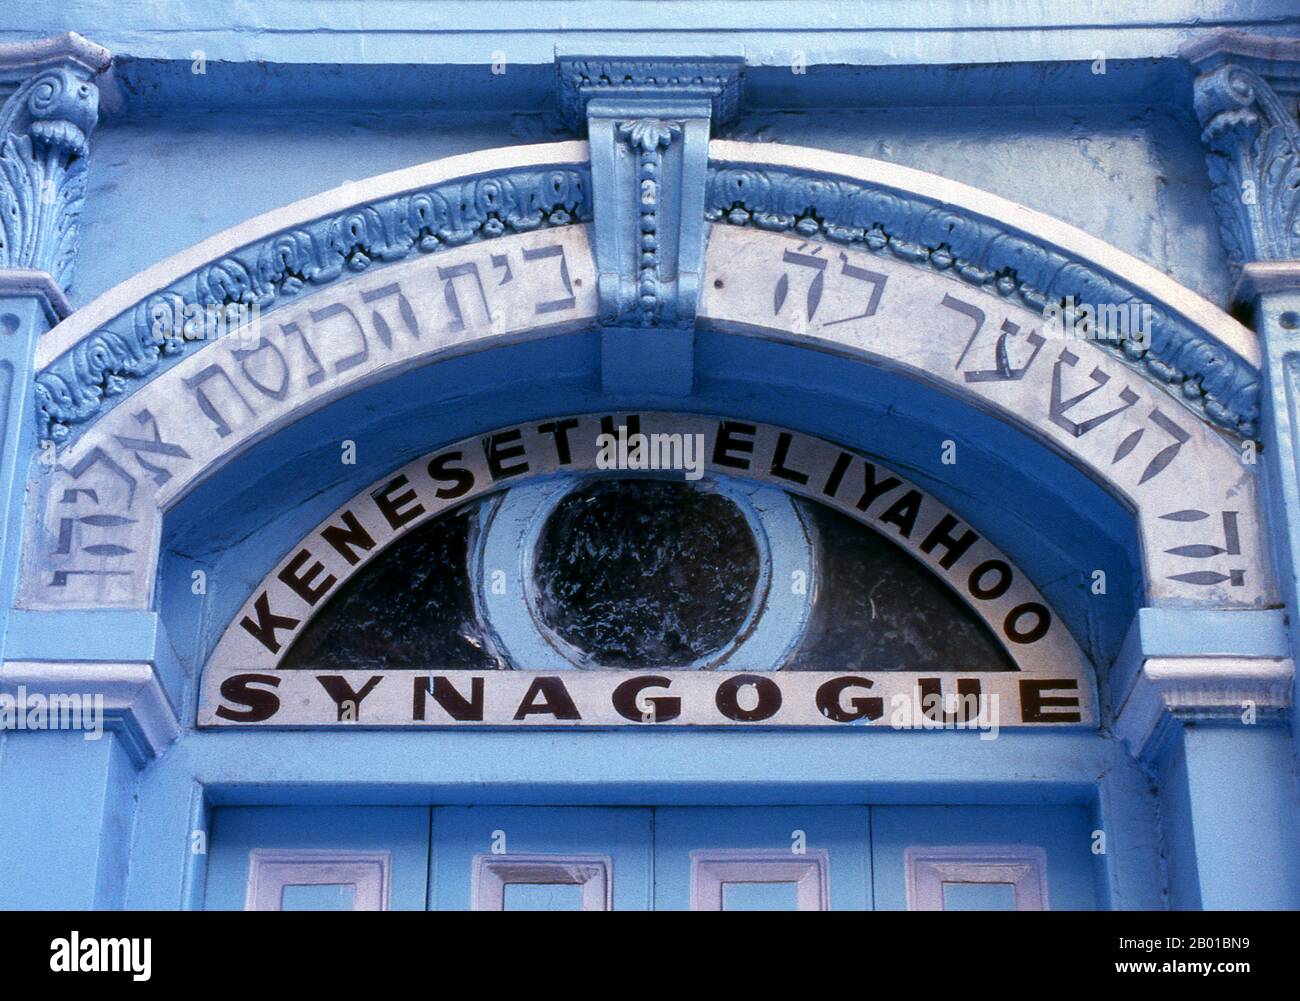 Inde: Knesset (Keneseth) Synagogue Eliyahoo, région de fort, Mumbai. La synagogue Knesset Eliyahoo, également Knesset Eliyahu, a été construite en 1884 par Jacob Elias Sassoon et ses frères pour commémorer leur père et est dirigée par le Jacob Sassoon Trust. Banque D'Images